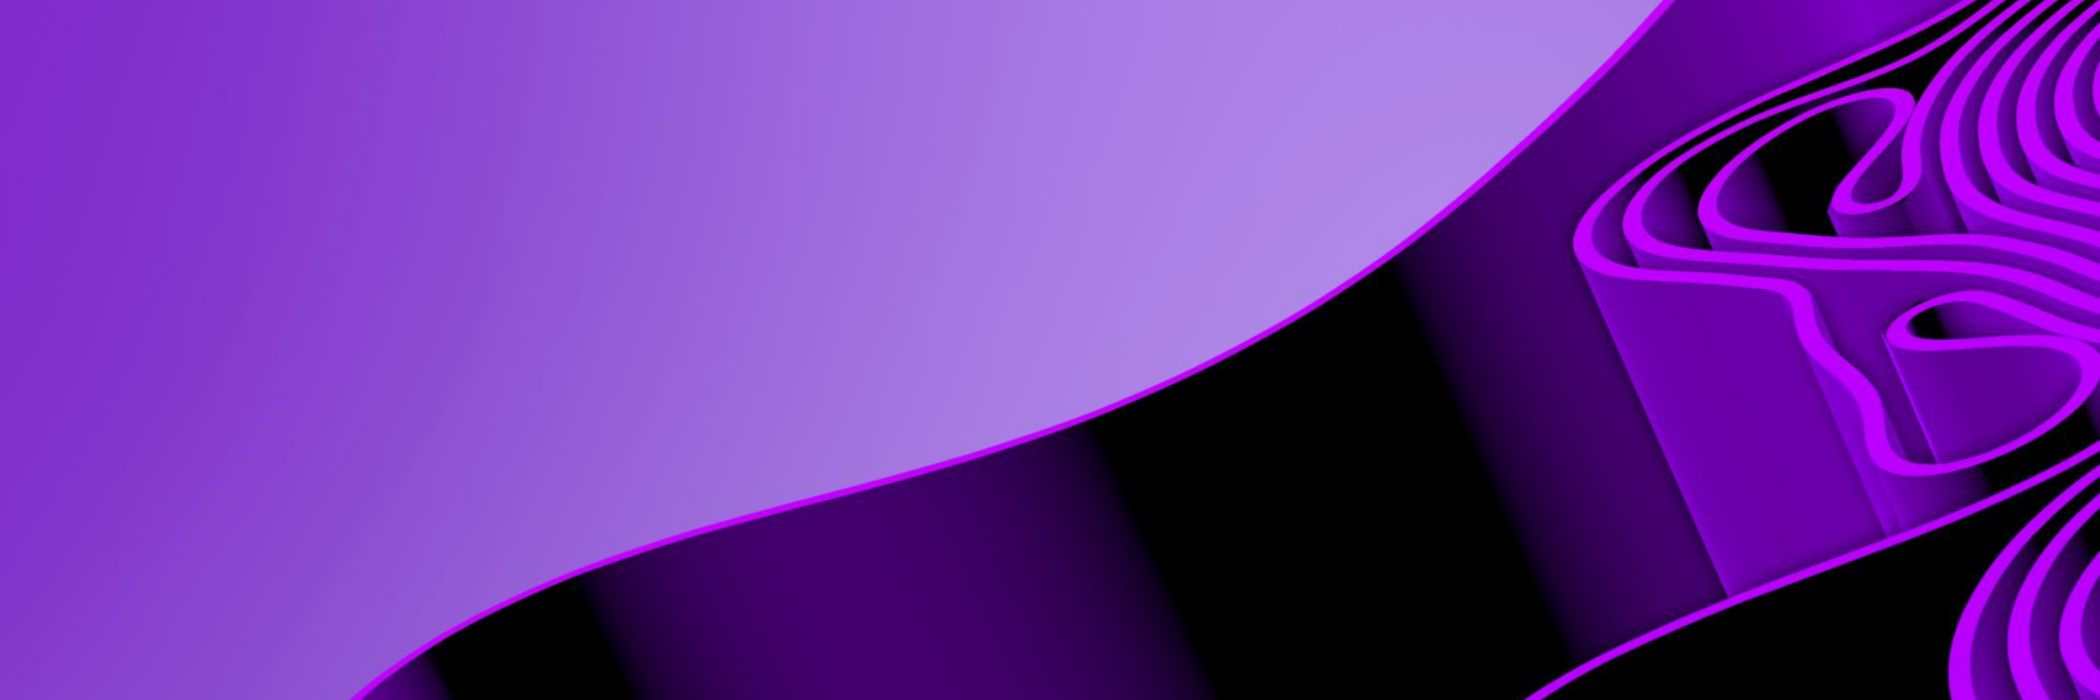 ひだ状になった紫のシート